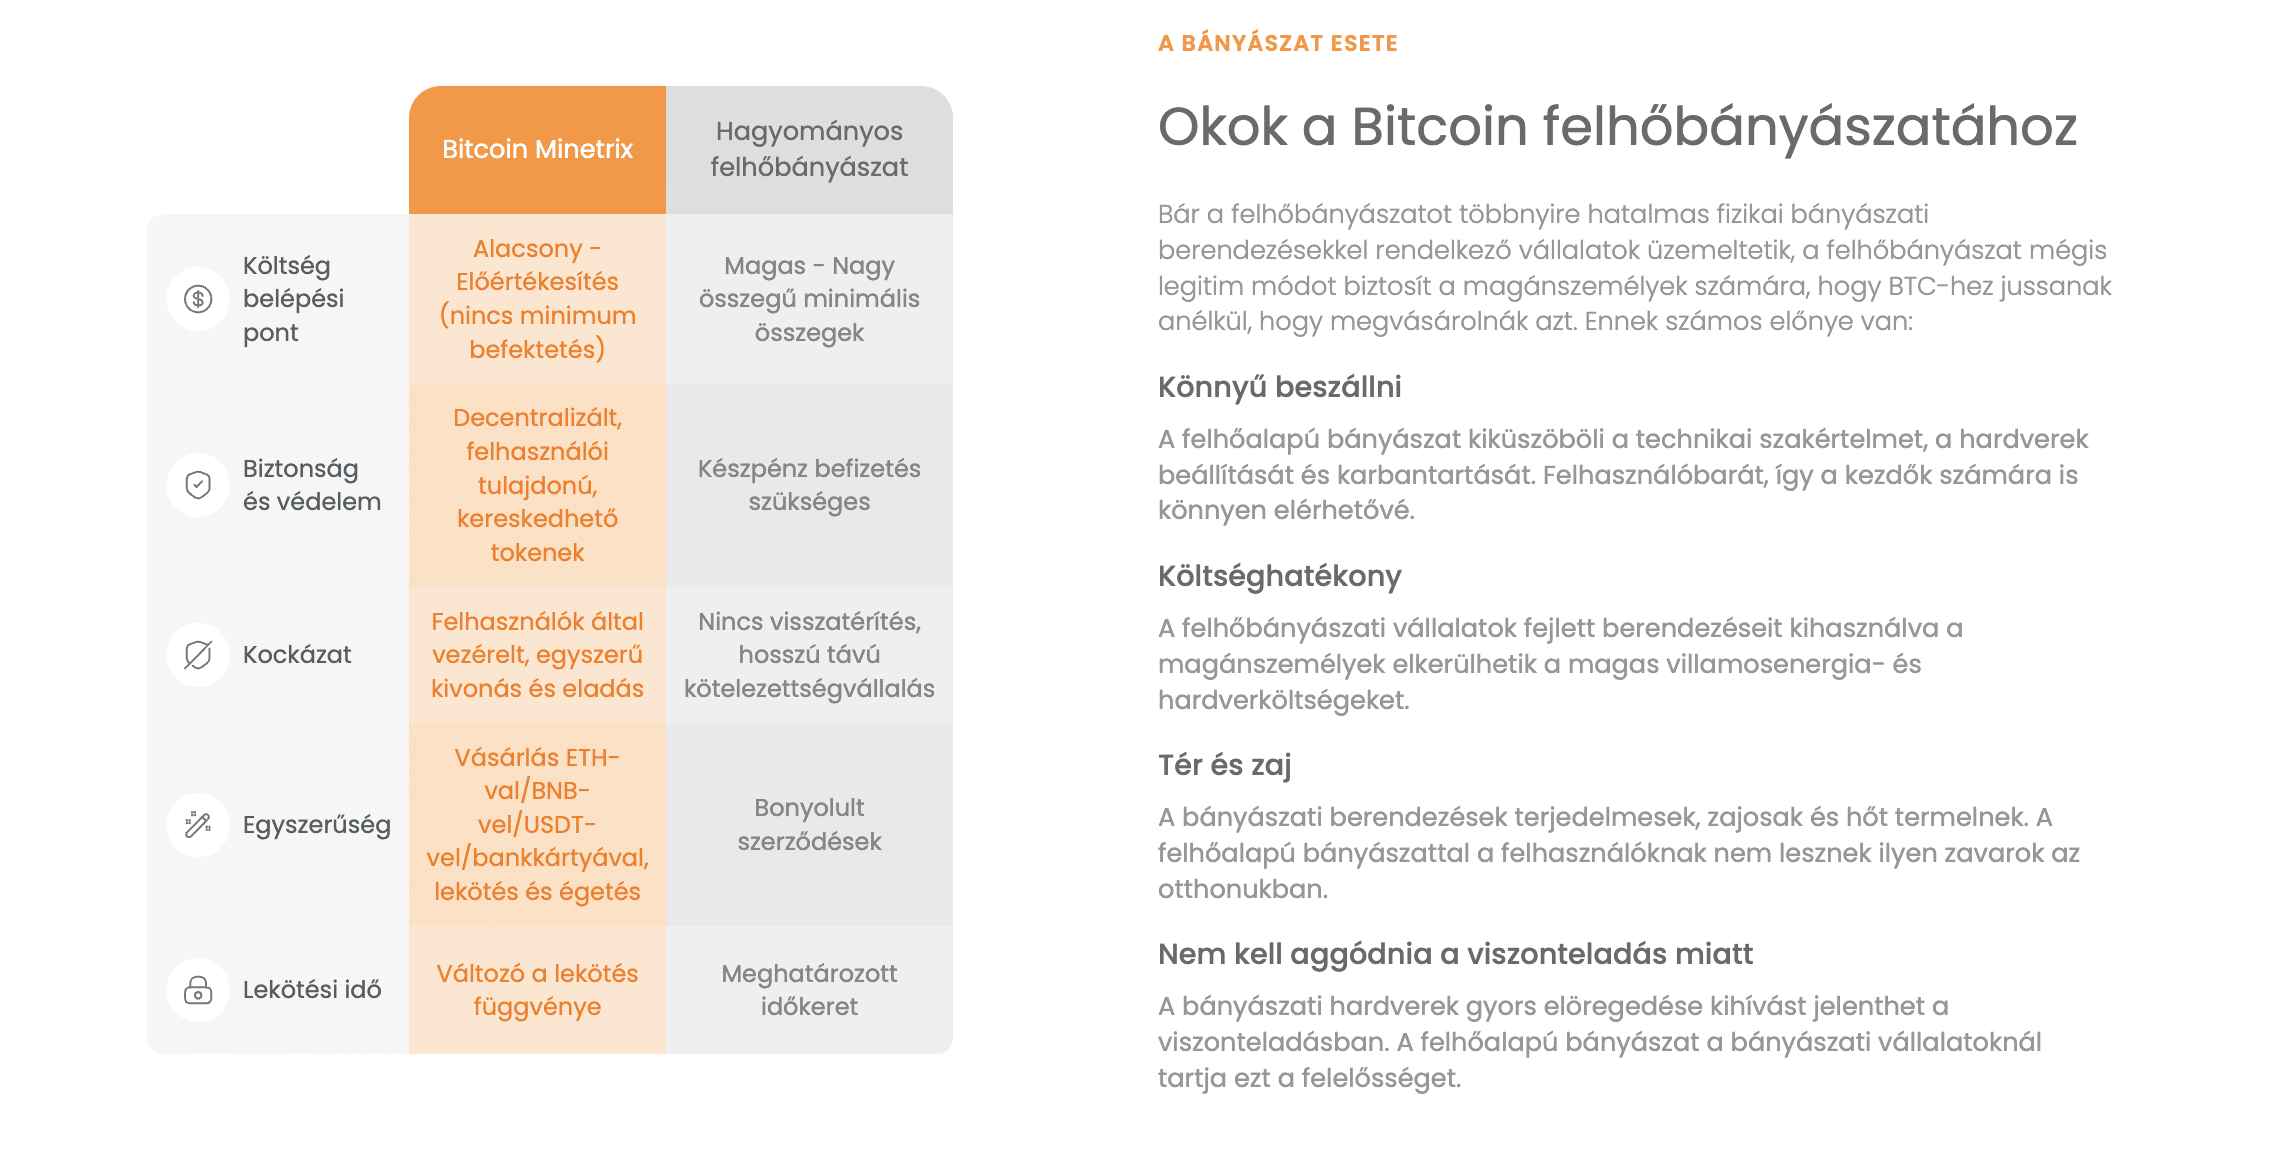 bitcoin-minetrix-felhobanyaszat-infobox